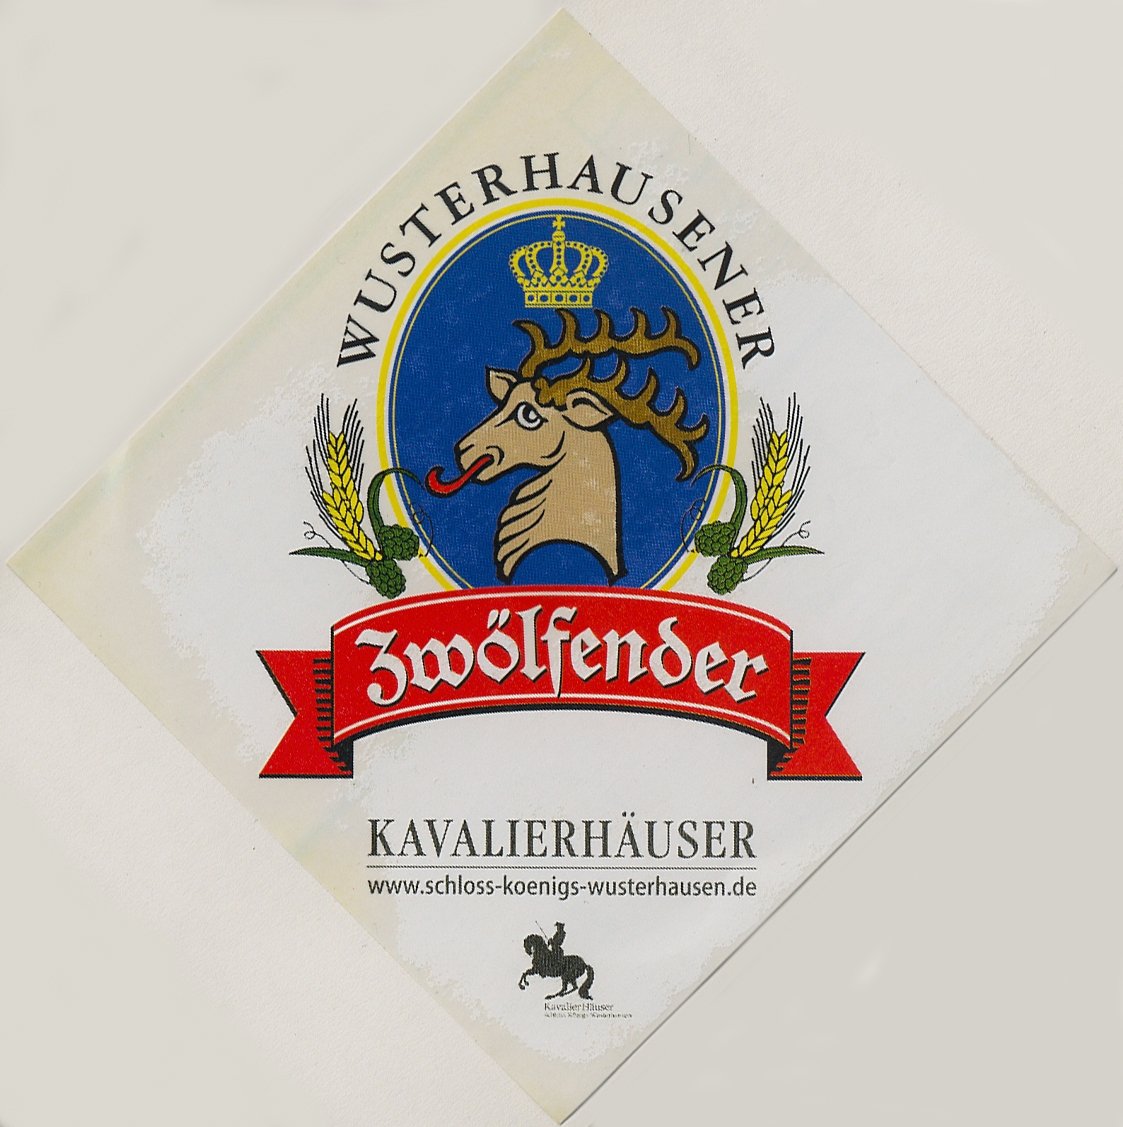 Etikett der Hofbrauerei im Schlossrestaurant Kavalierhäuser in Königs Wusterhausen, 2006 (ARCHIV DEUTSCHER BIERETIKETTEN CC BY-NC-SA)